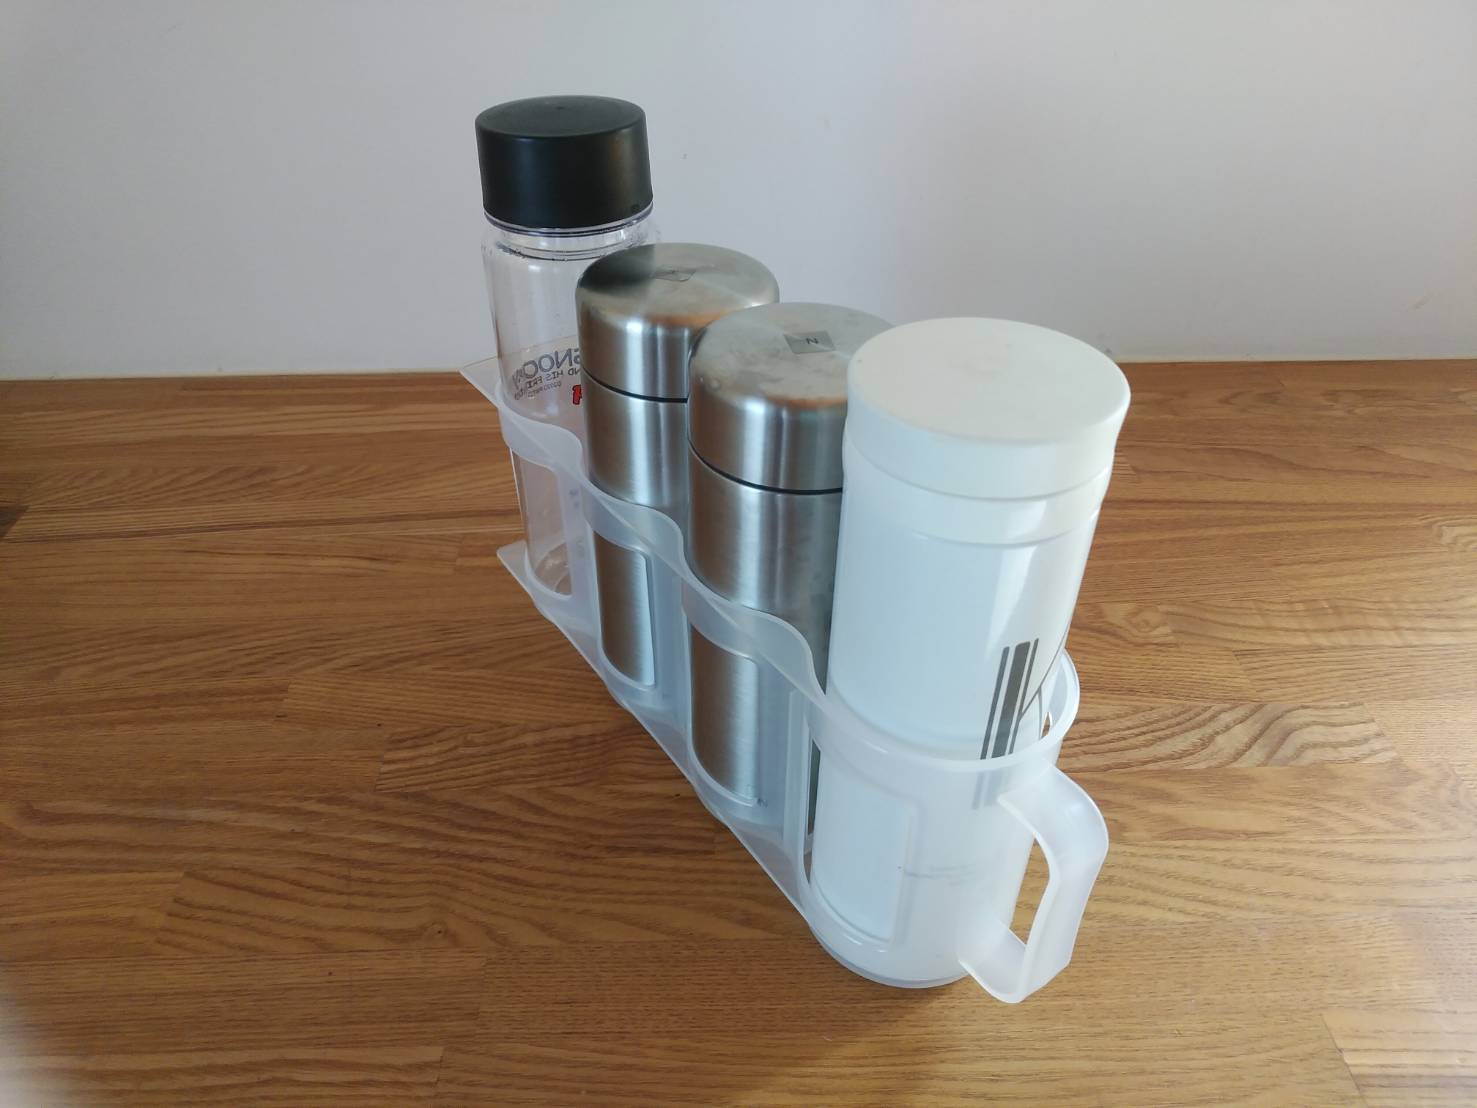 水筒収納どうしてる 無印 3coins 100均など取り出しやすい水筒収納アイデア 整理収納アドバイザー直伝